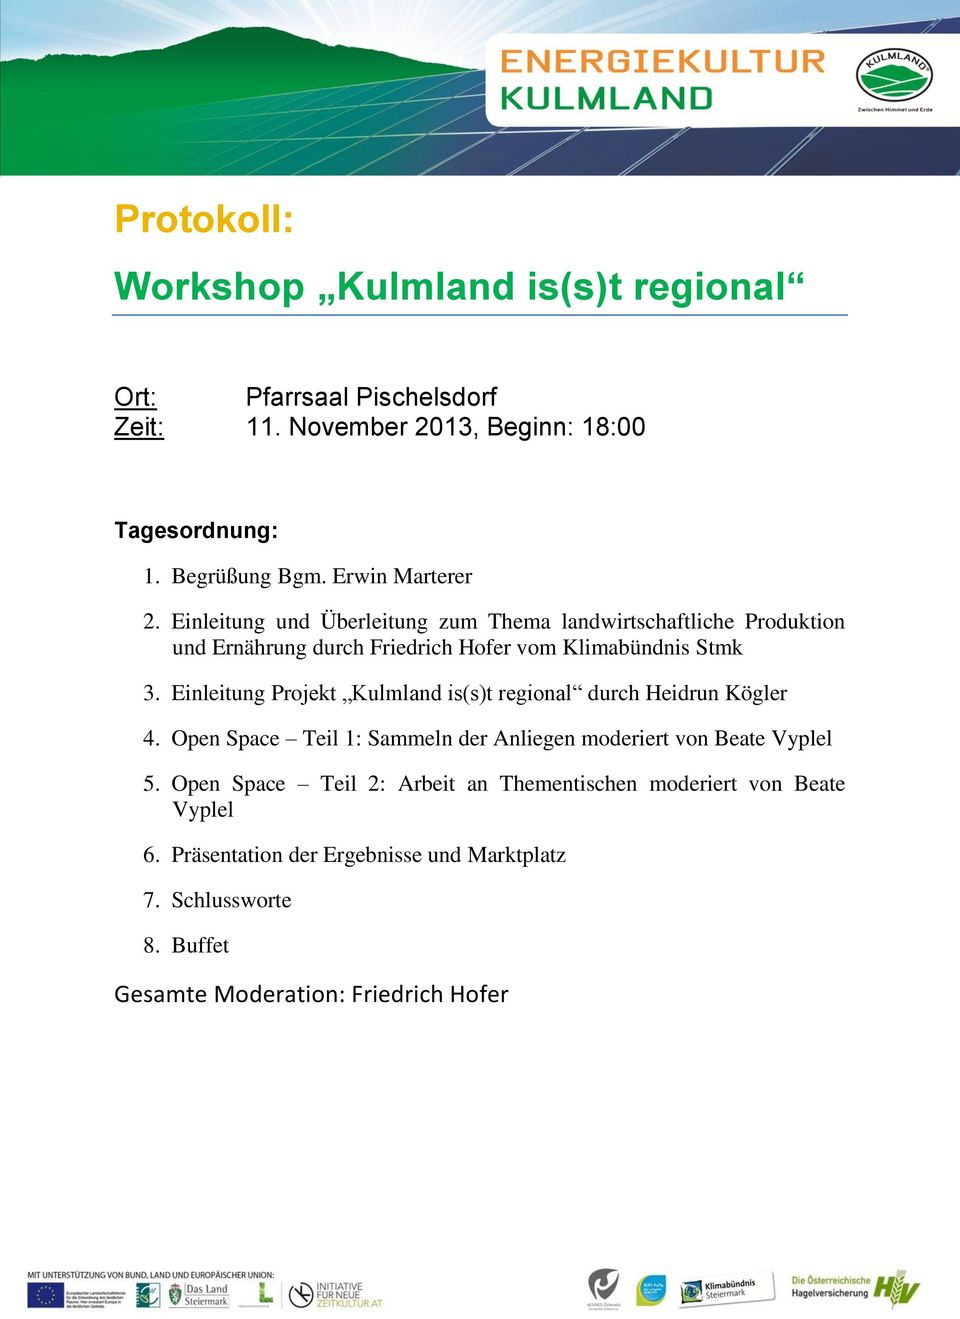 Einleitung Projekt Kulmland is(s)t regional durch Heidrun Kögler 4. Open Space Teil 1: Sammeln der Anliegen moderiert von Beate Vyplel 5.